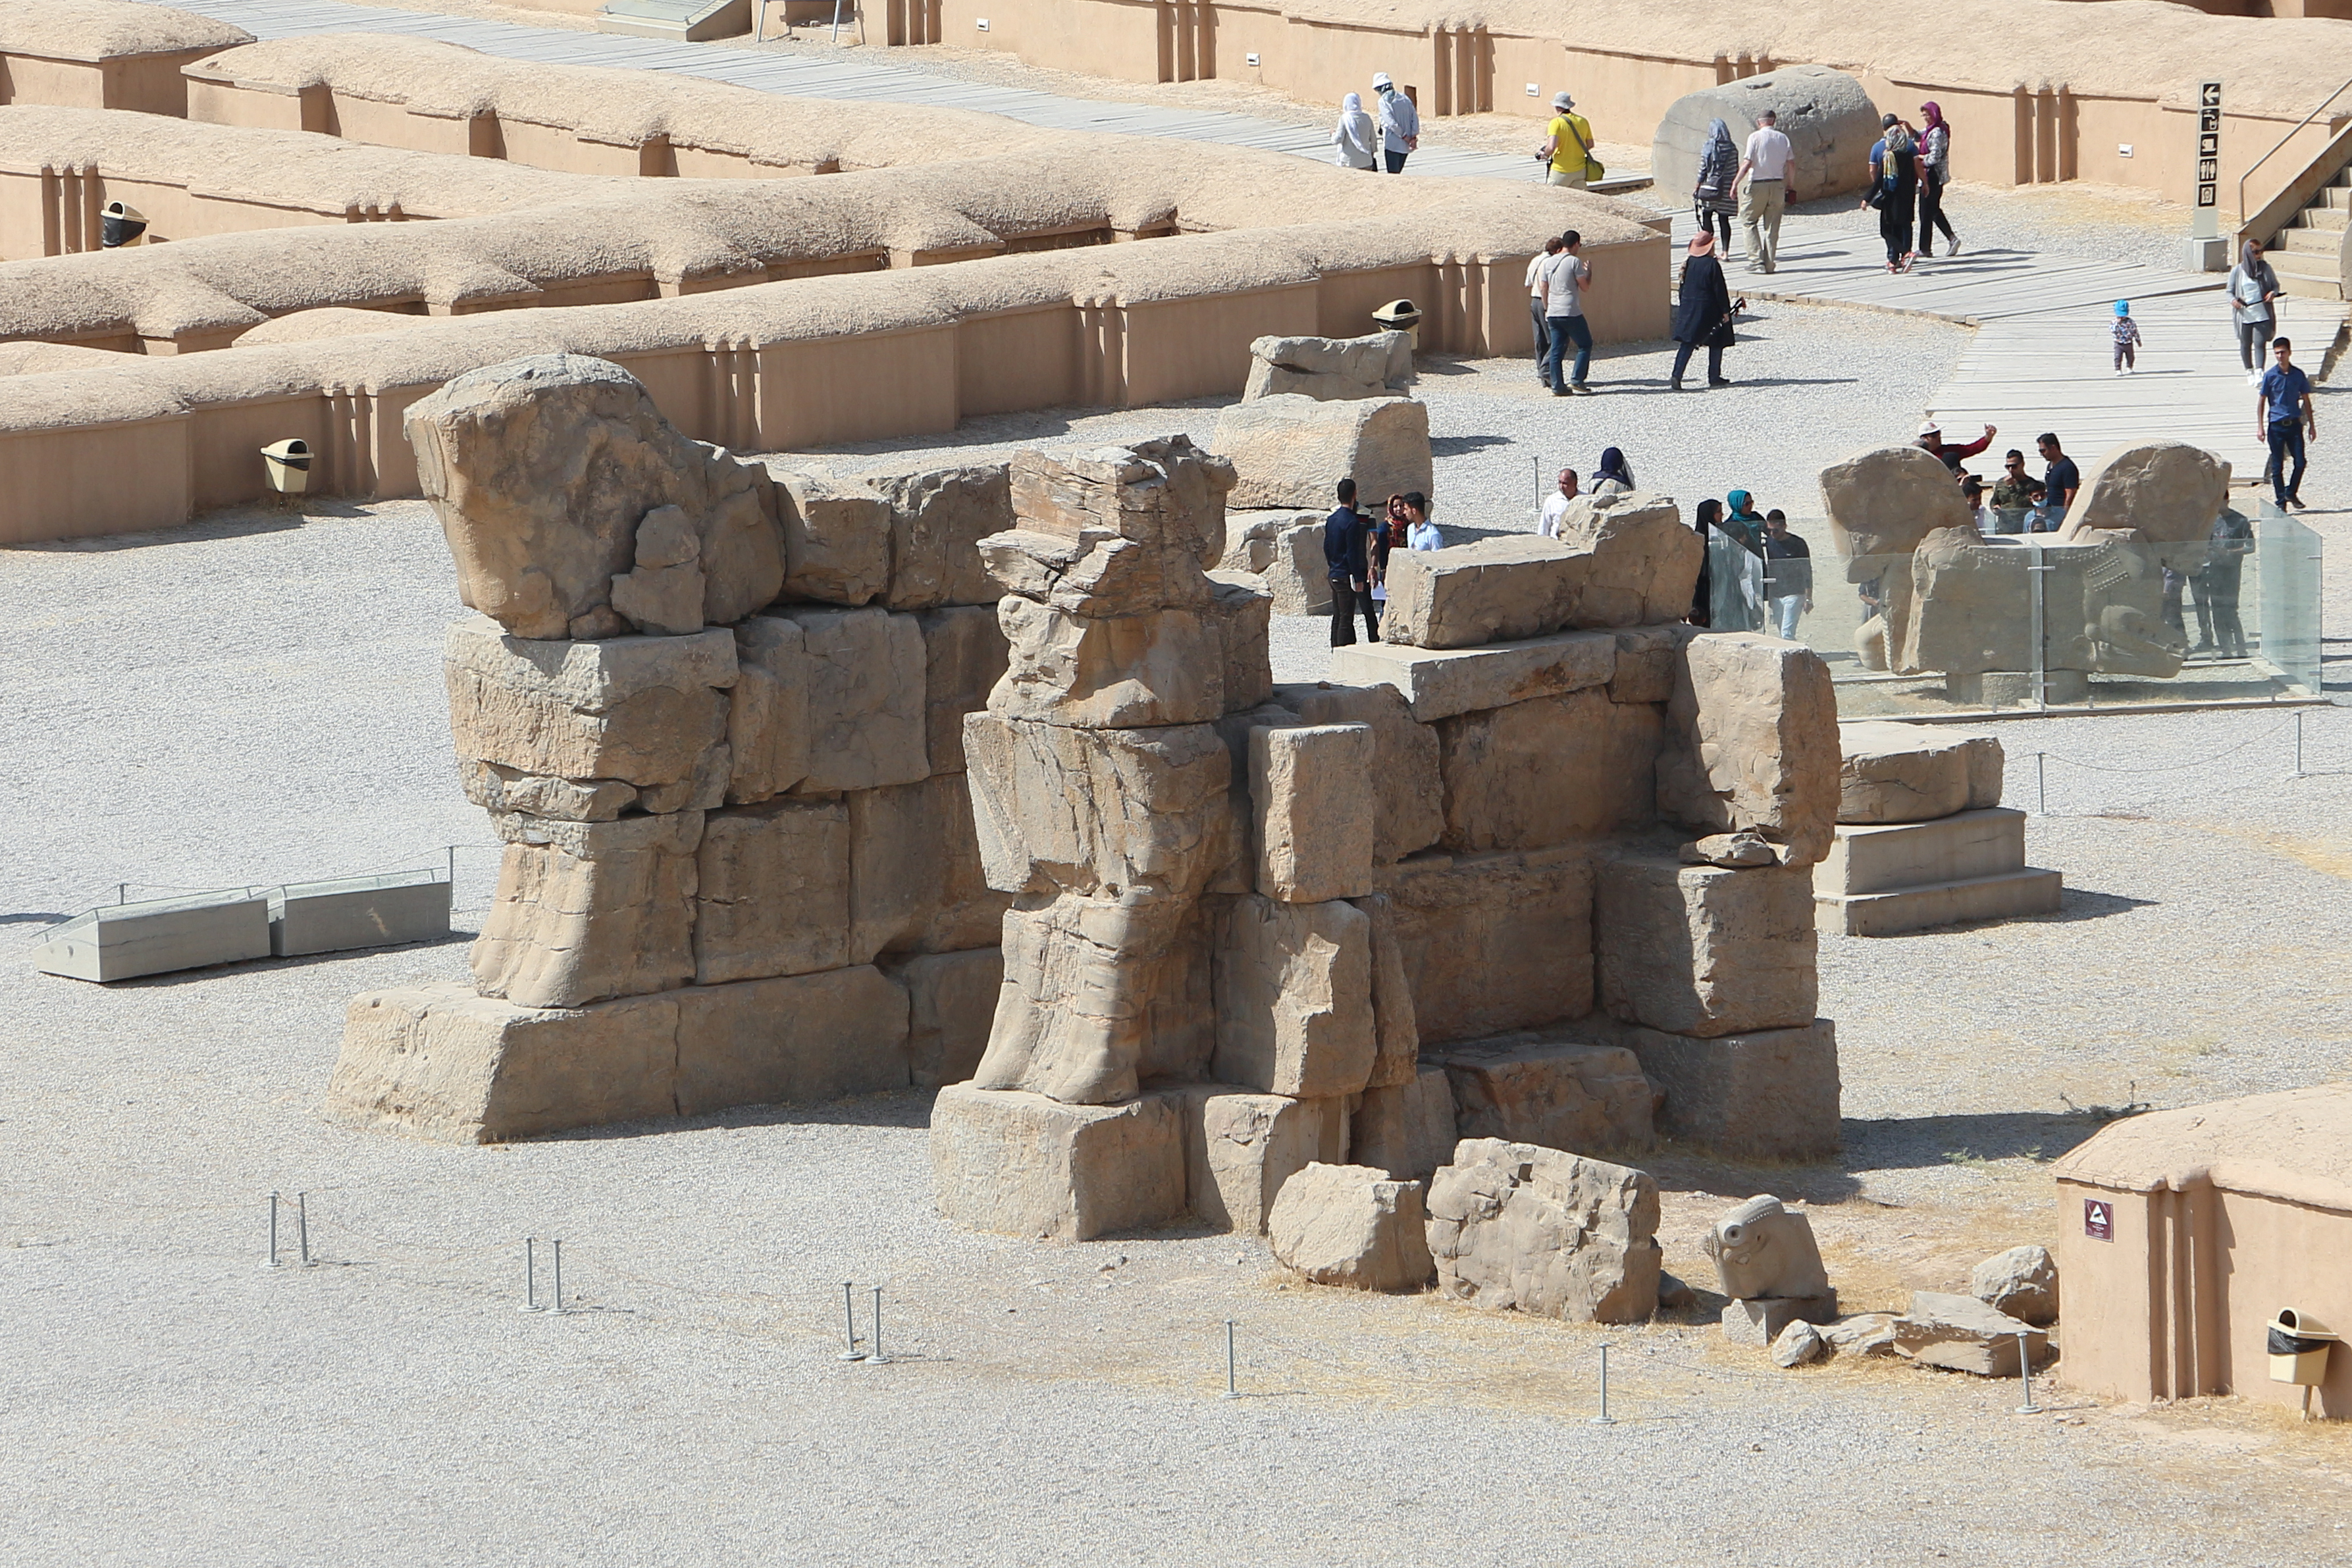 Persepolis - Unfinished gate